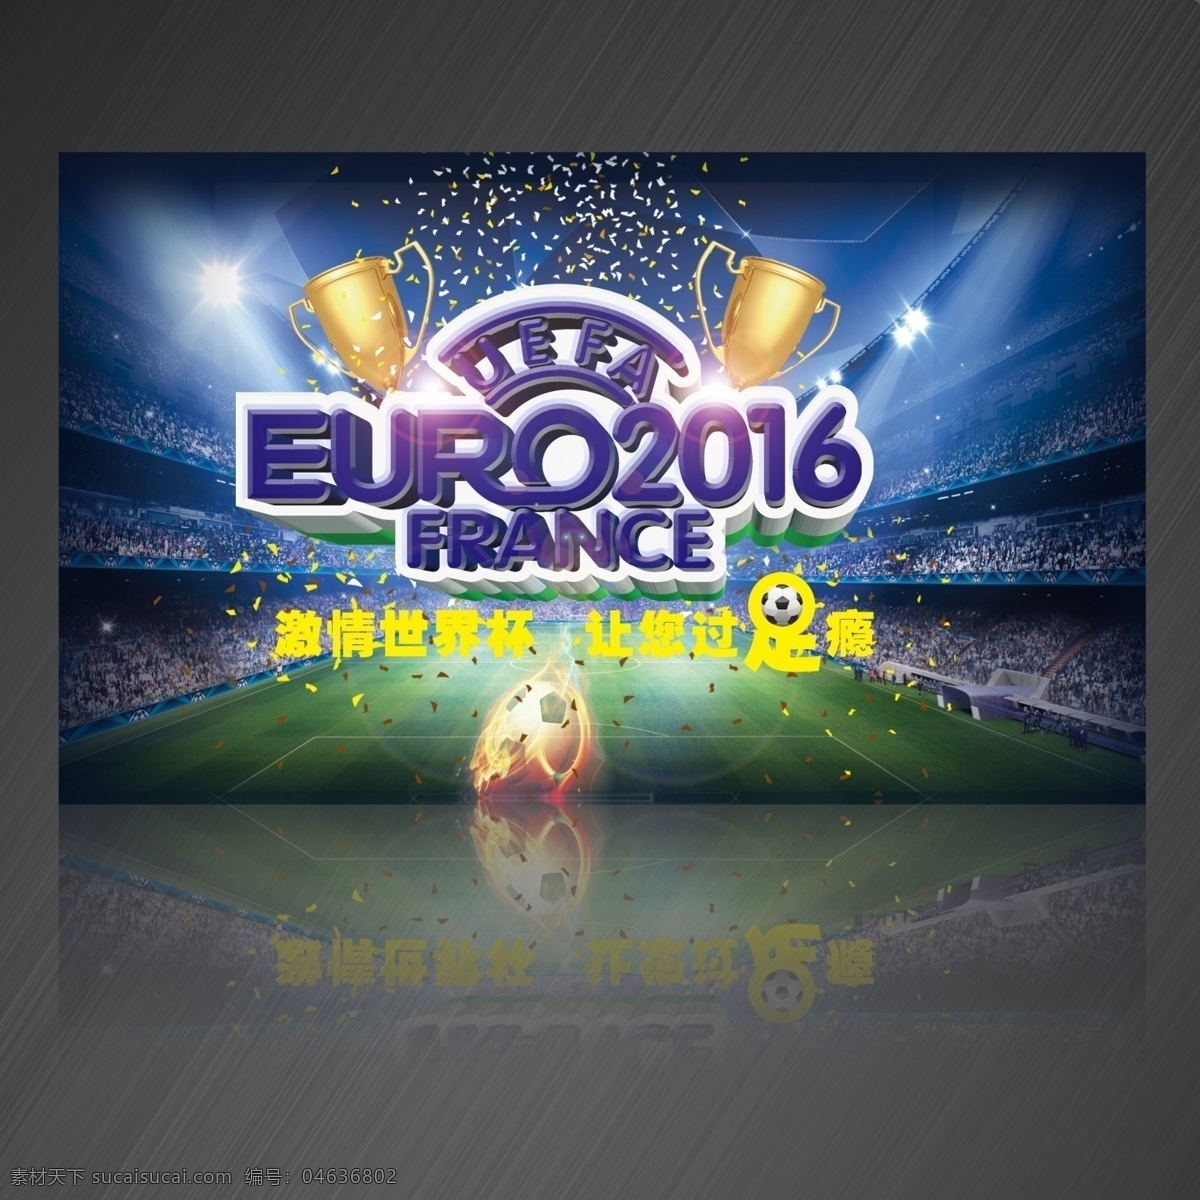 欧洲杯 欧洲杯海报 足球盛宴 欧洲杯竞猜 2016 法国欧洲杯 欧洲杯宣传单 足球海报 足球赛事 欧洲冠军杯 冠军欧洲 法国足球 灰色